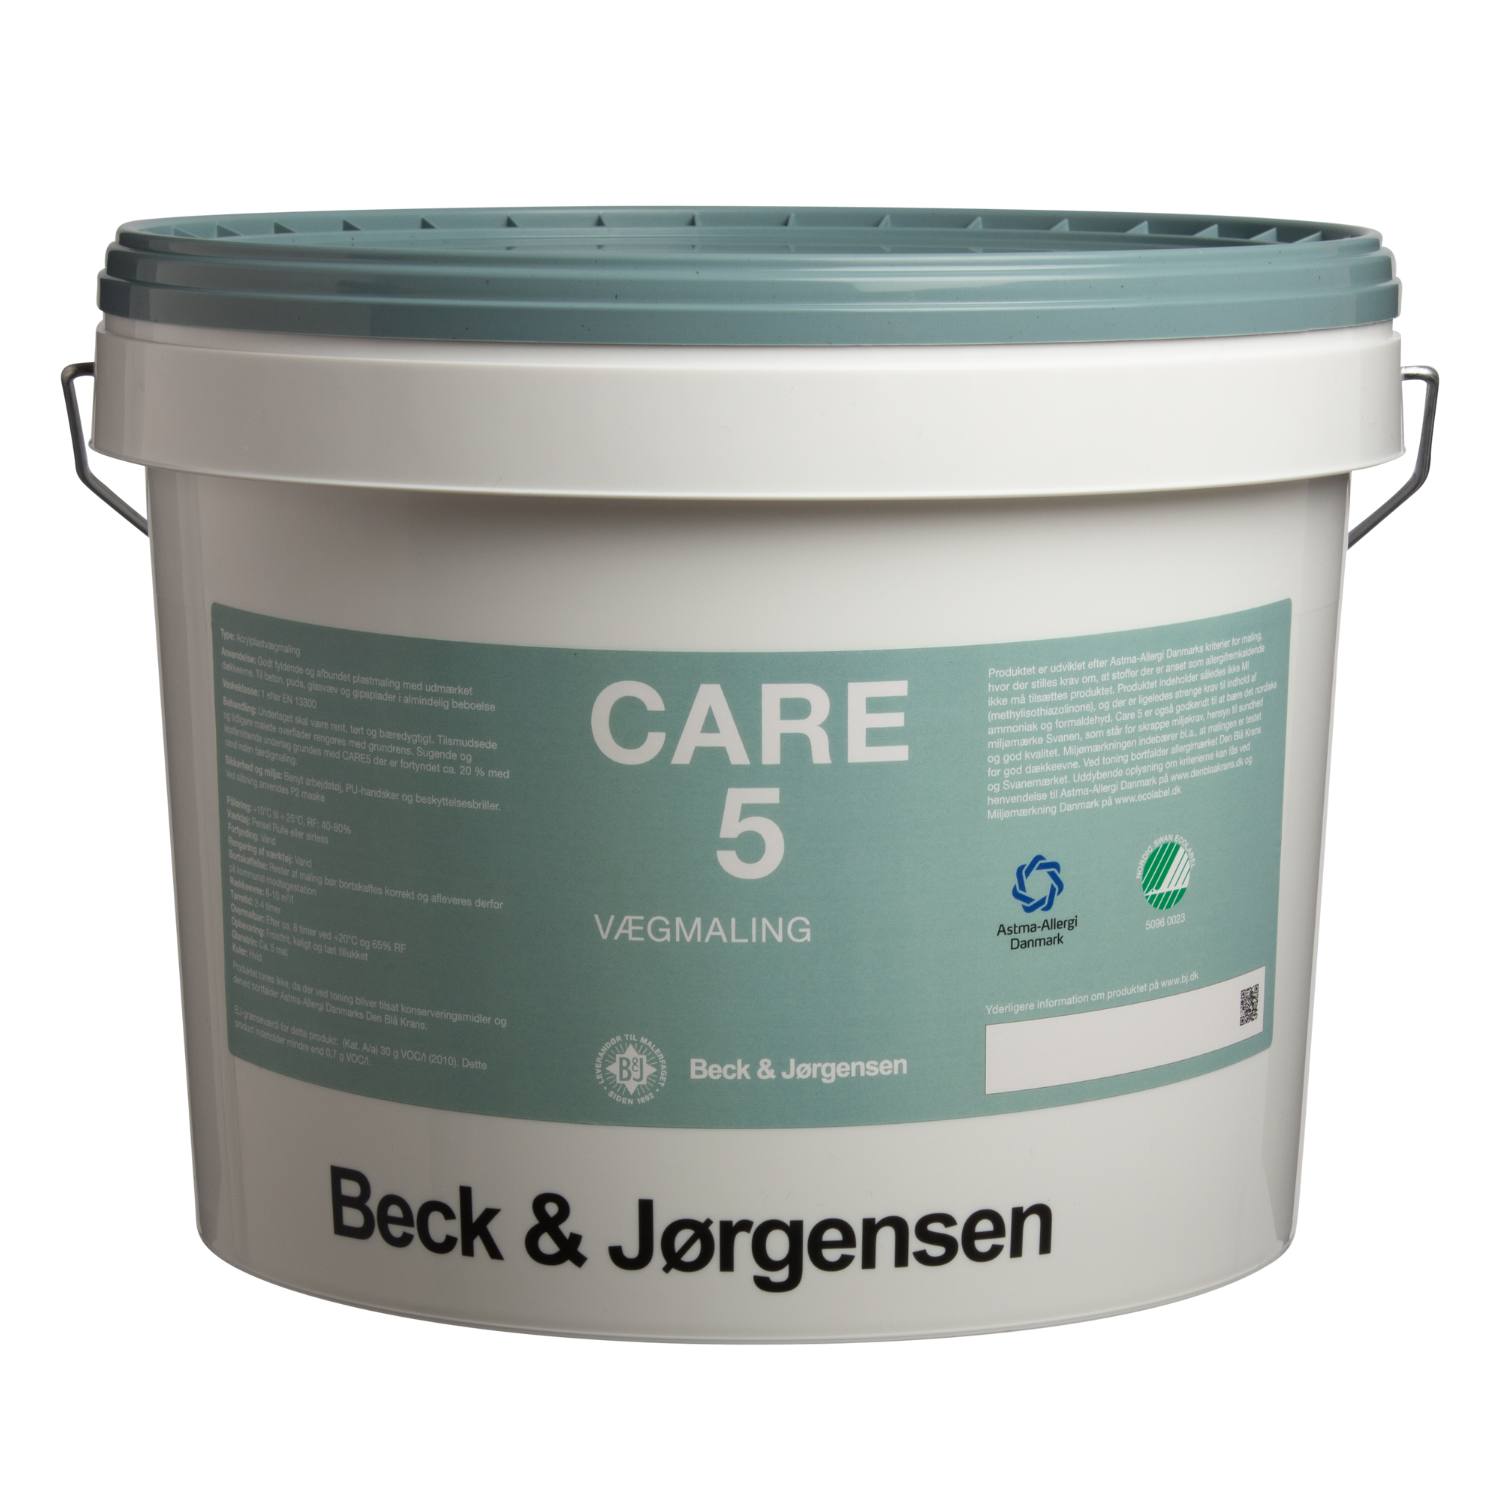 Billede af Allergivenlig maling, Care 5 - Maling og spartel fra Beck & Jørgensen